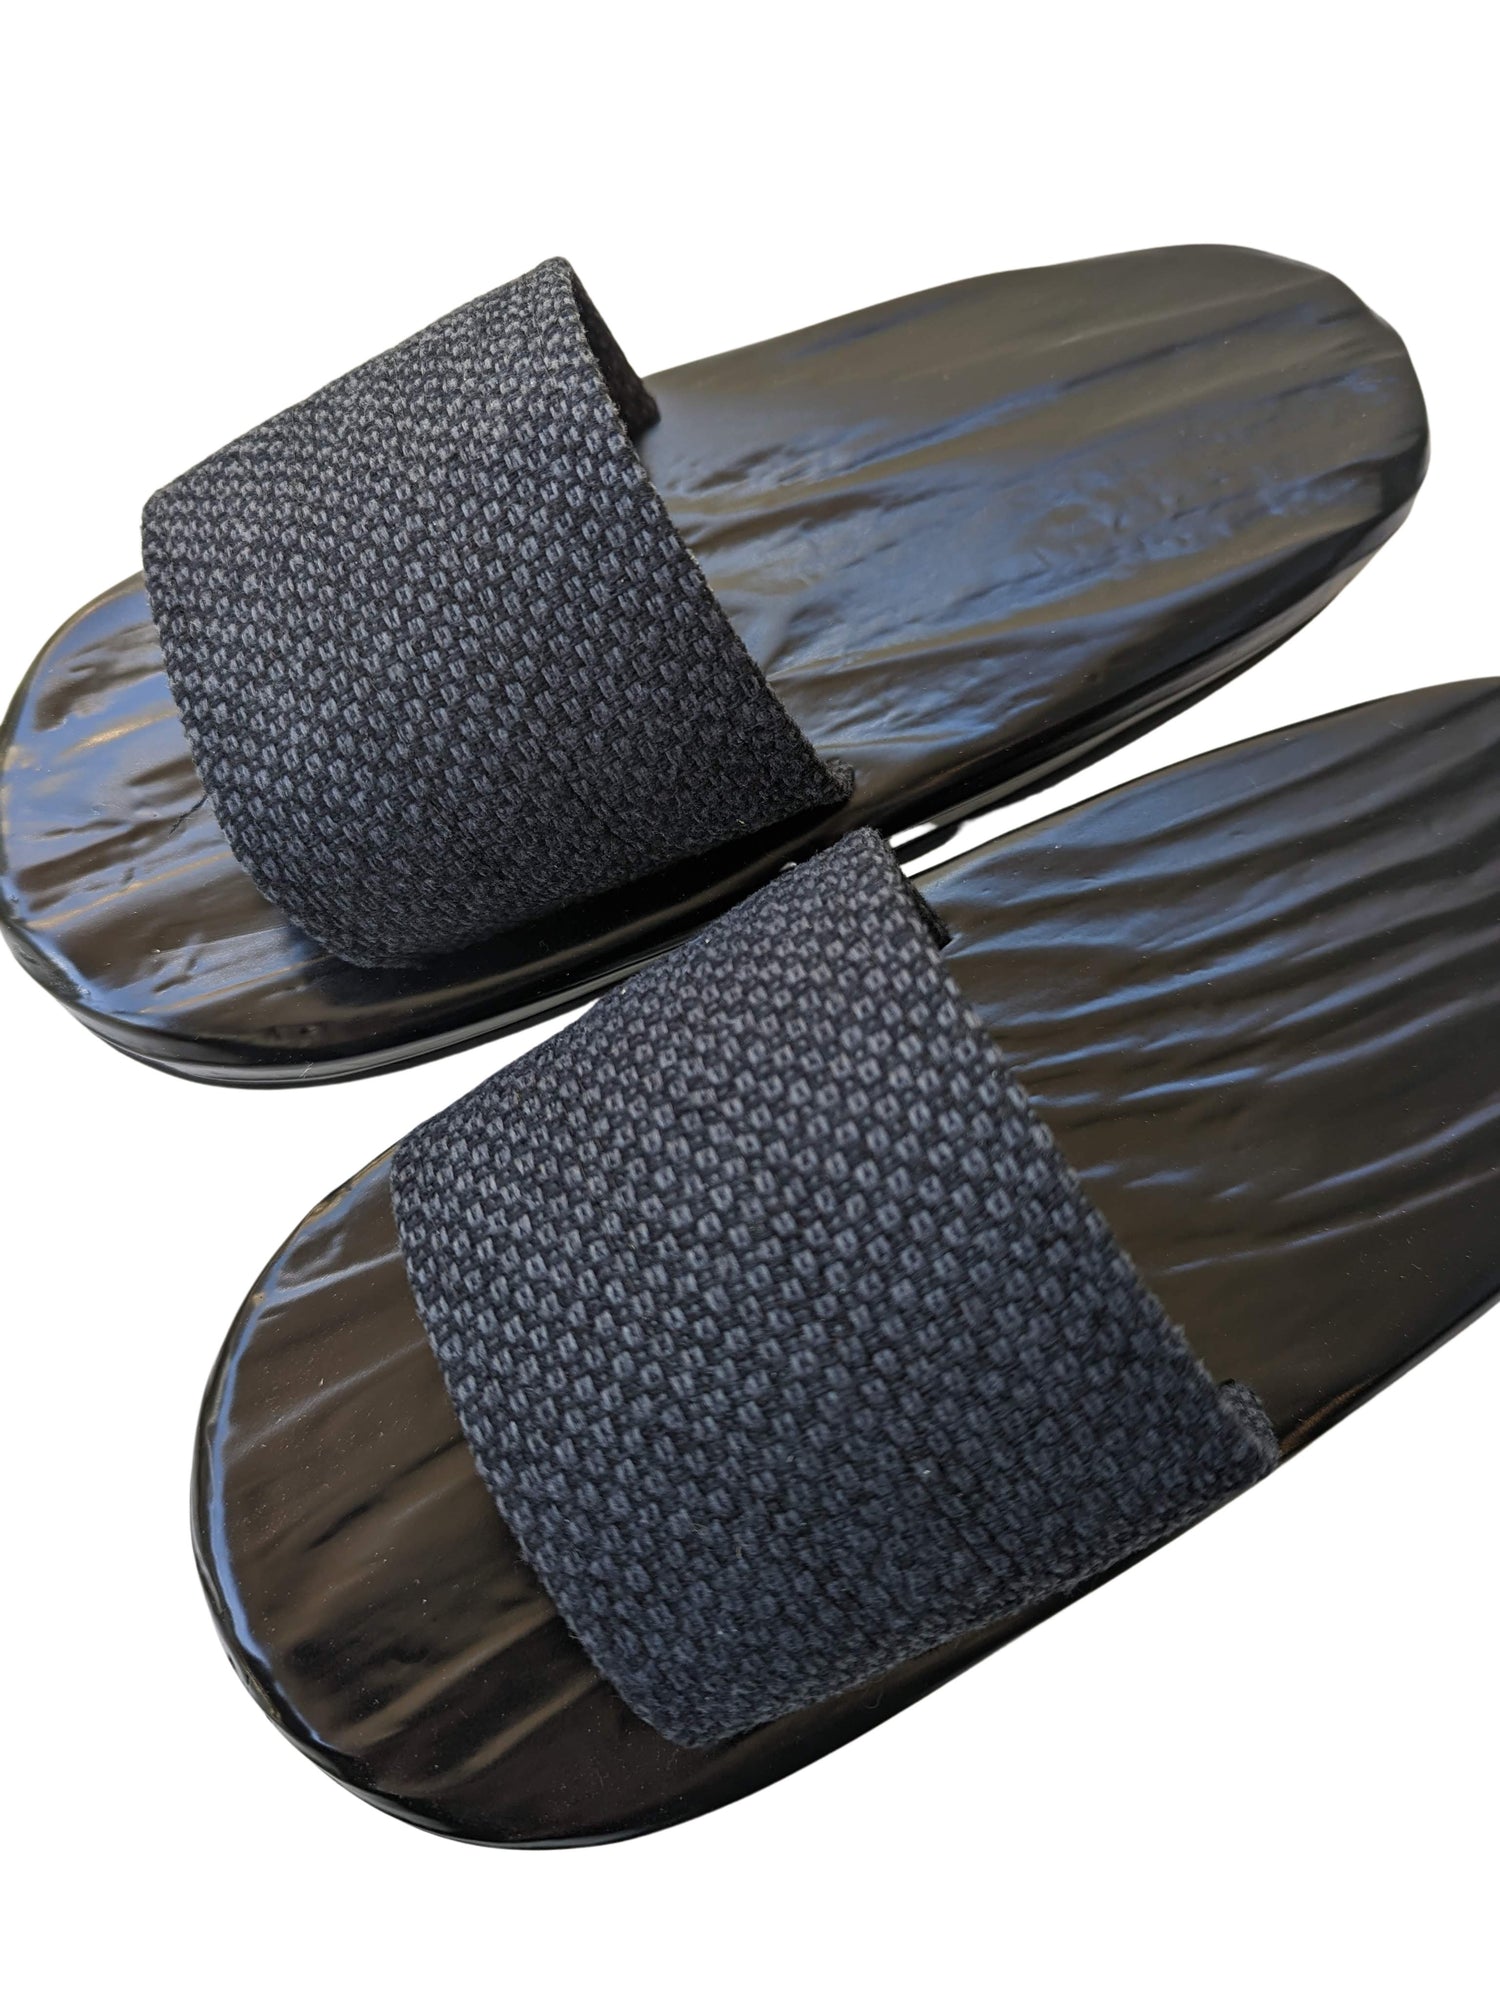 Bangladesh Keel geur Black Wood painted GETA Slippers [Outdoors] | Heiwa Slipper